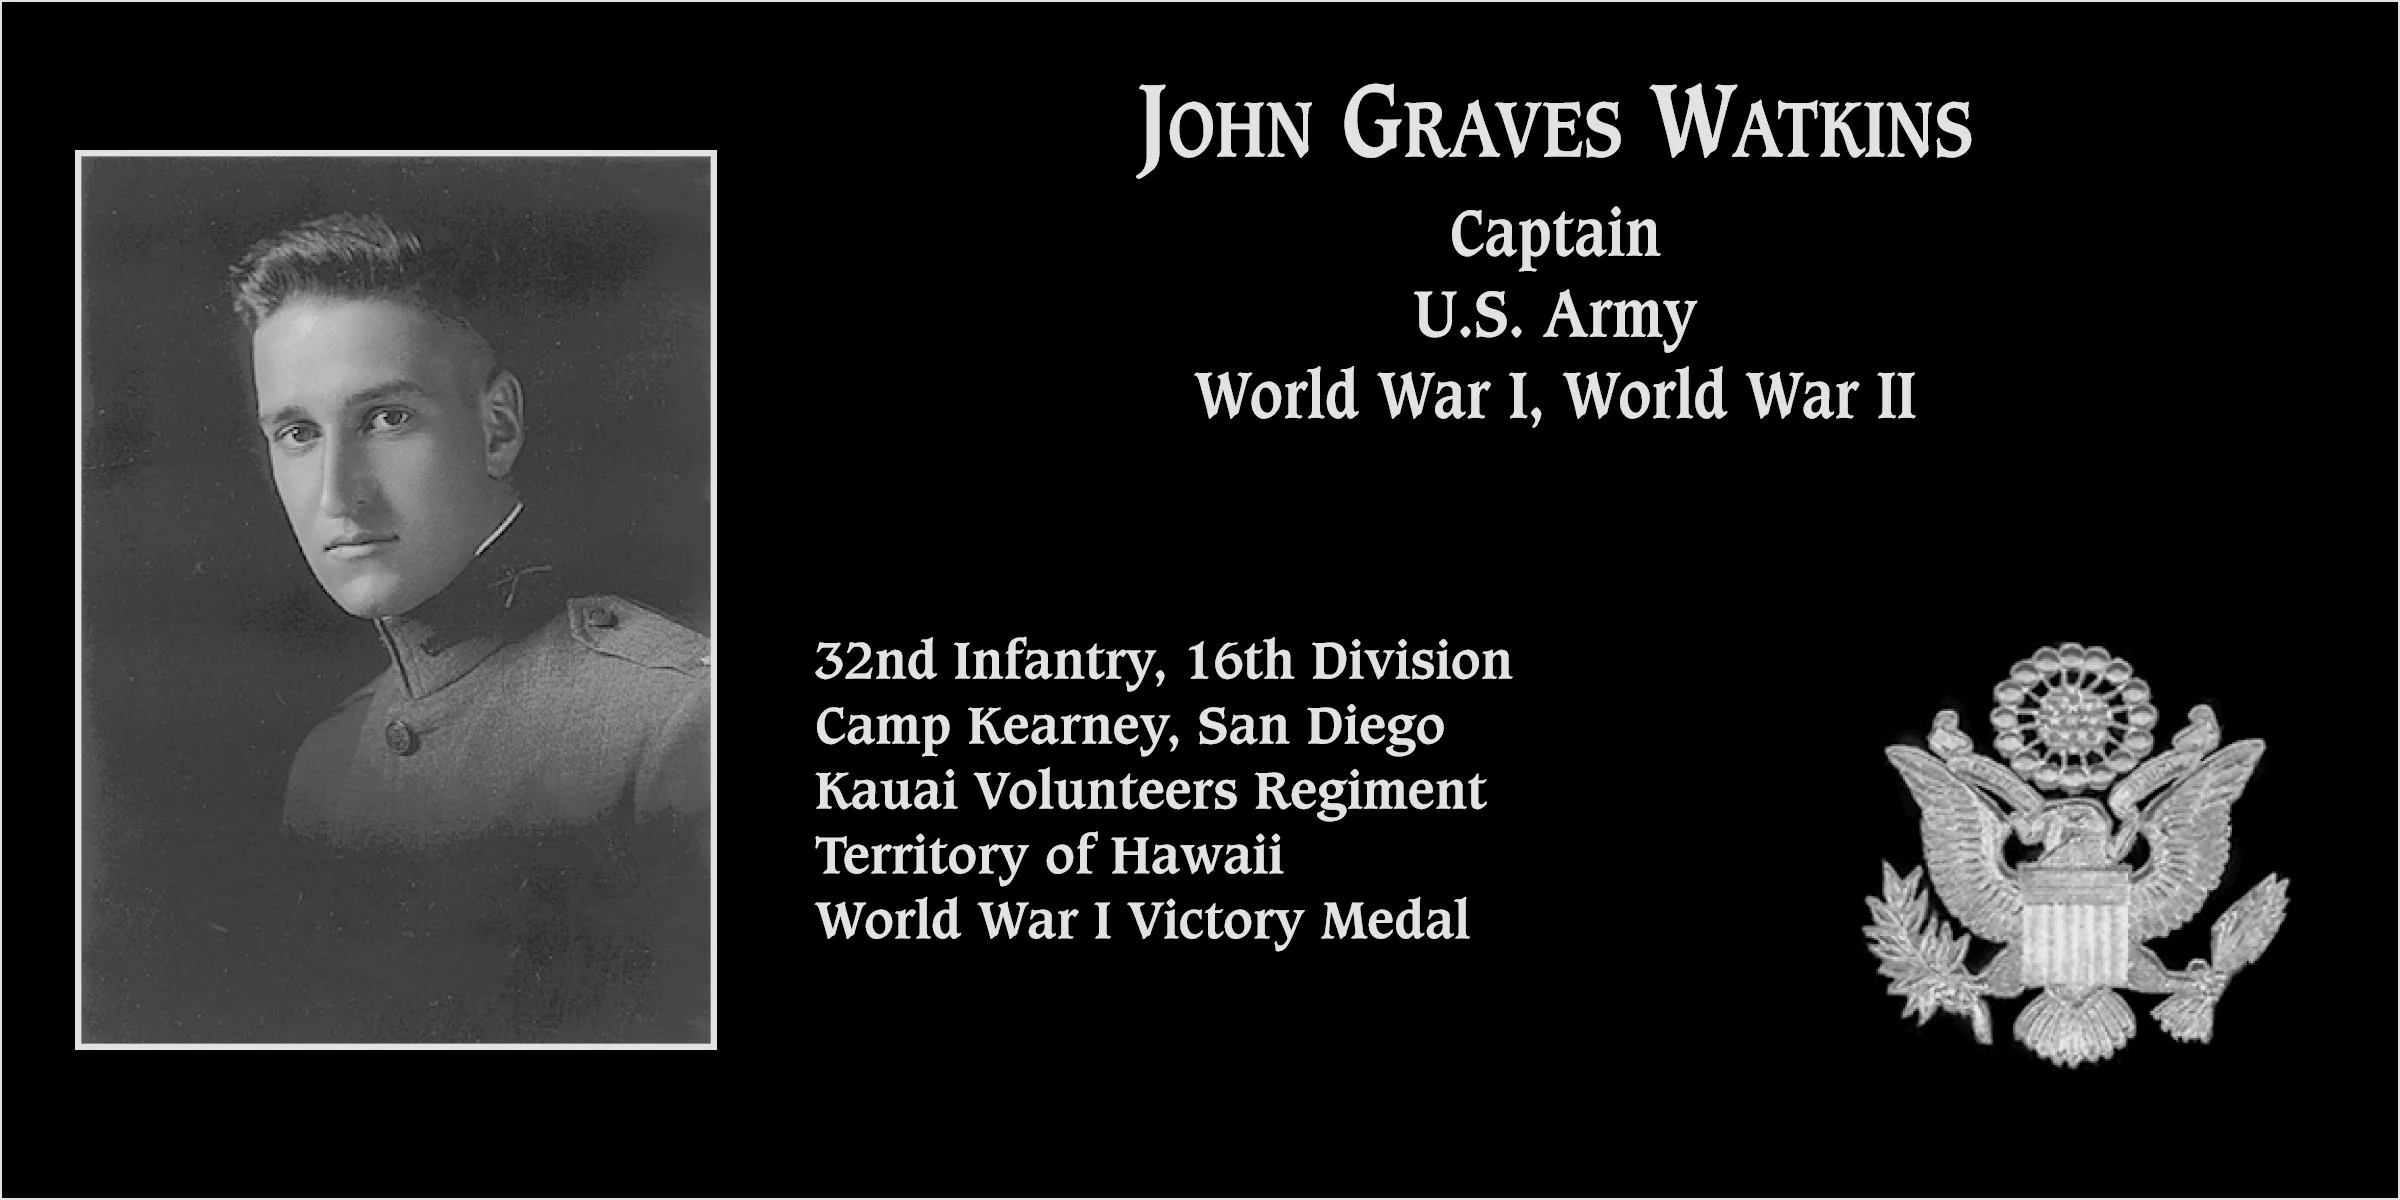 John Graves Watkins